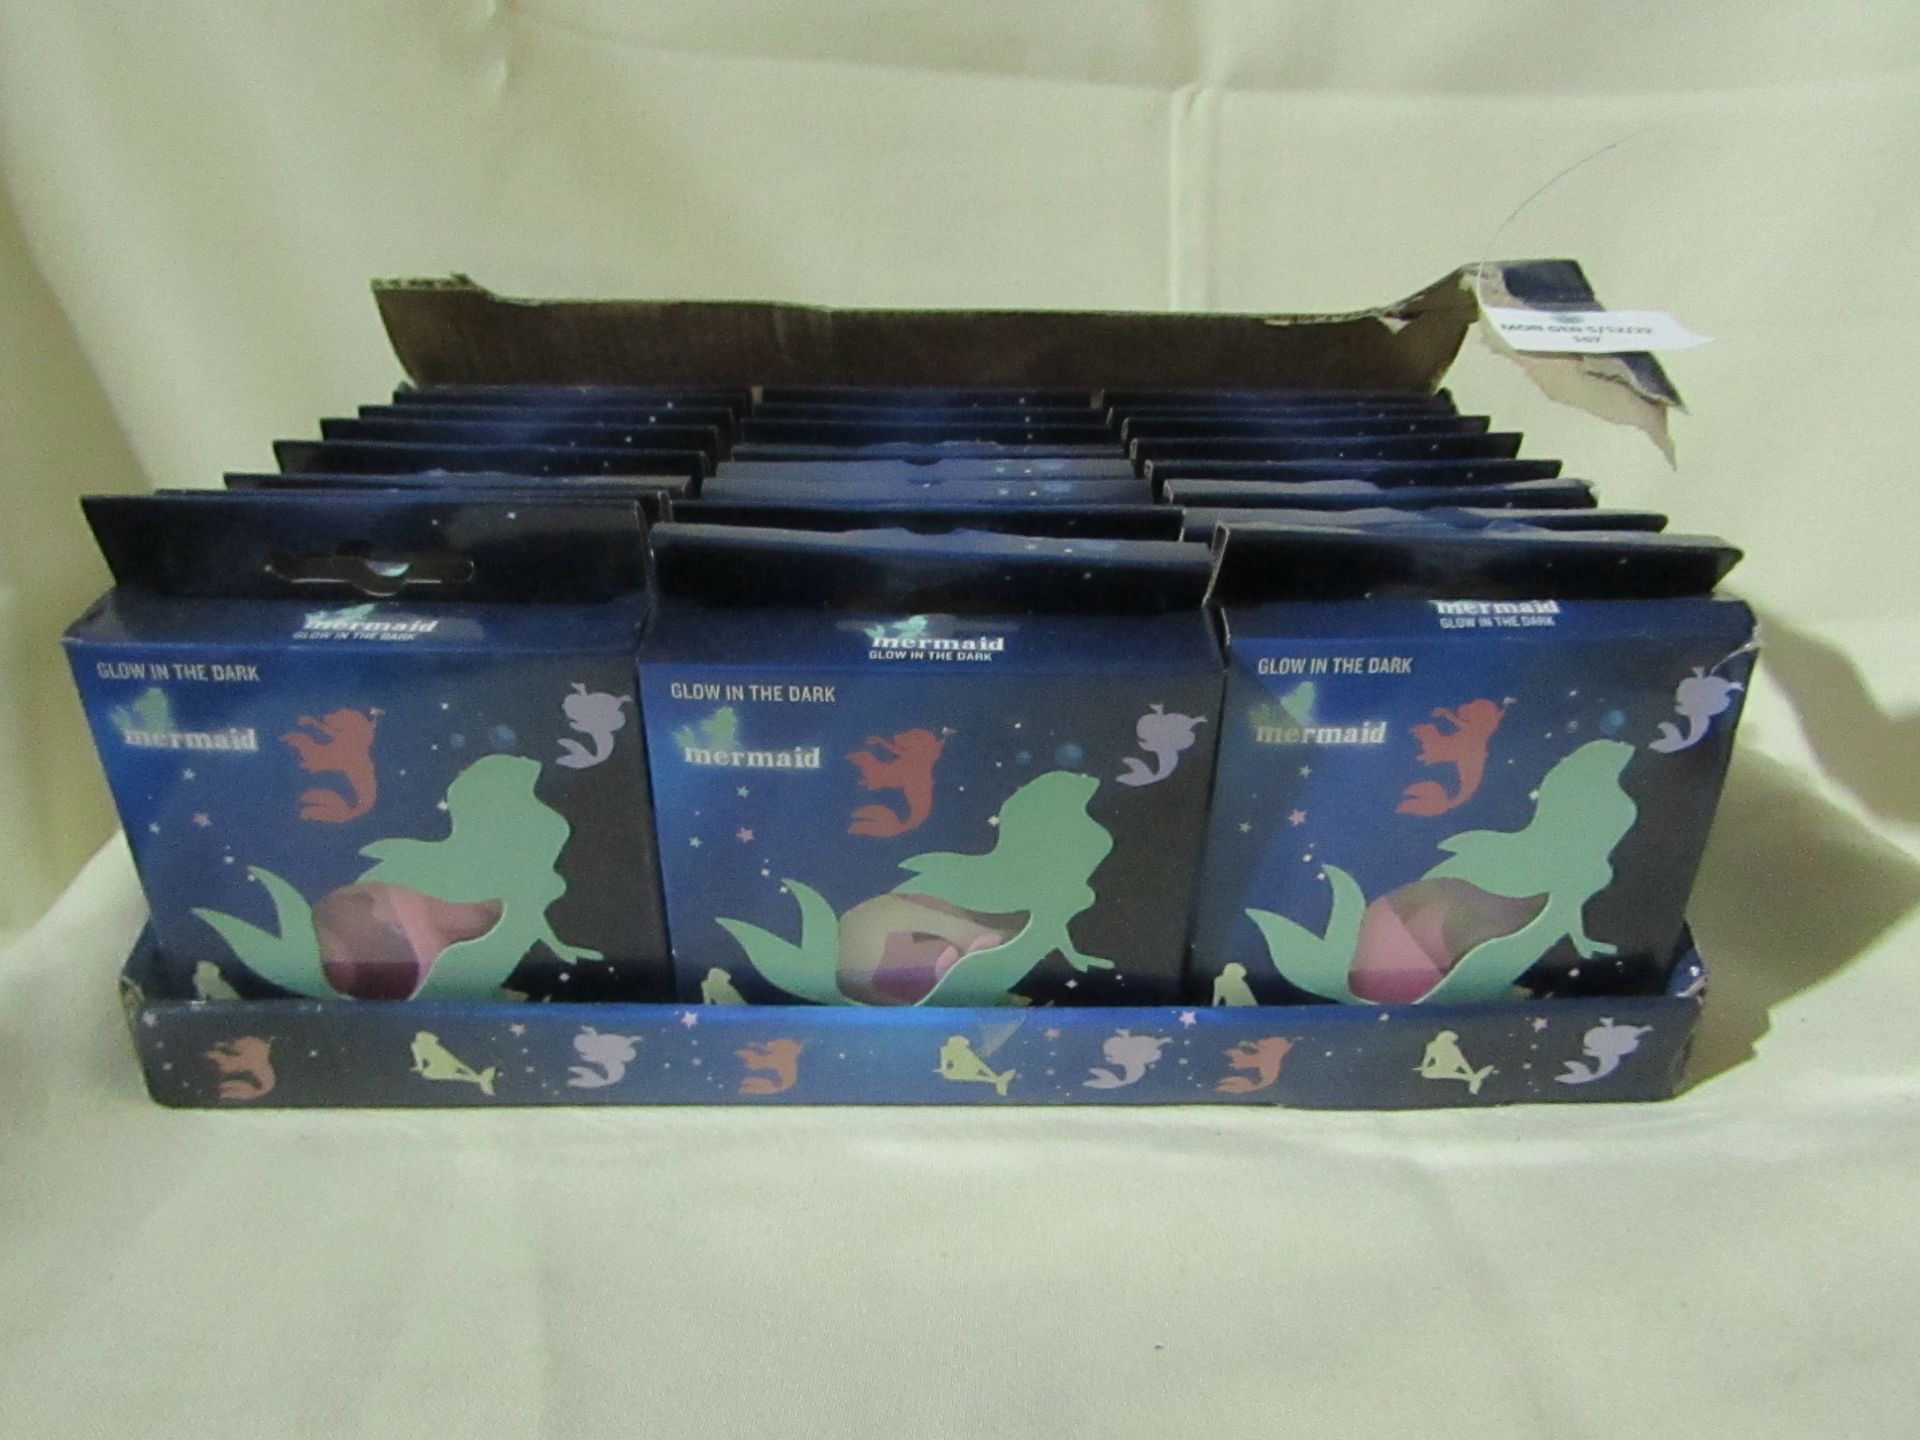 24x Mermaid - Glow In The Dark Wall Stickers - Unused & Boxed.